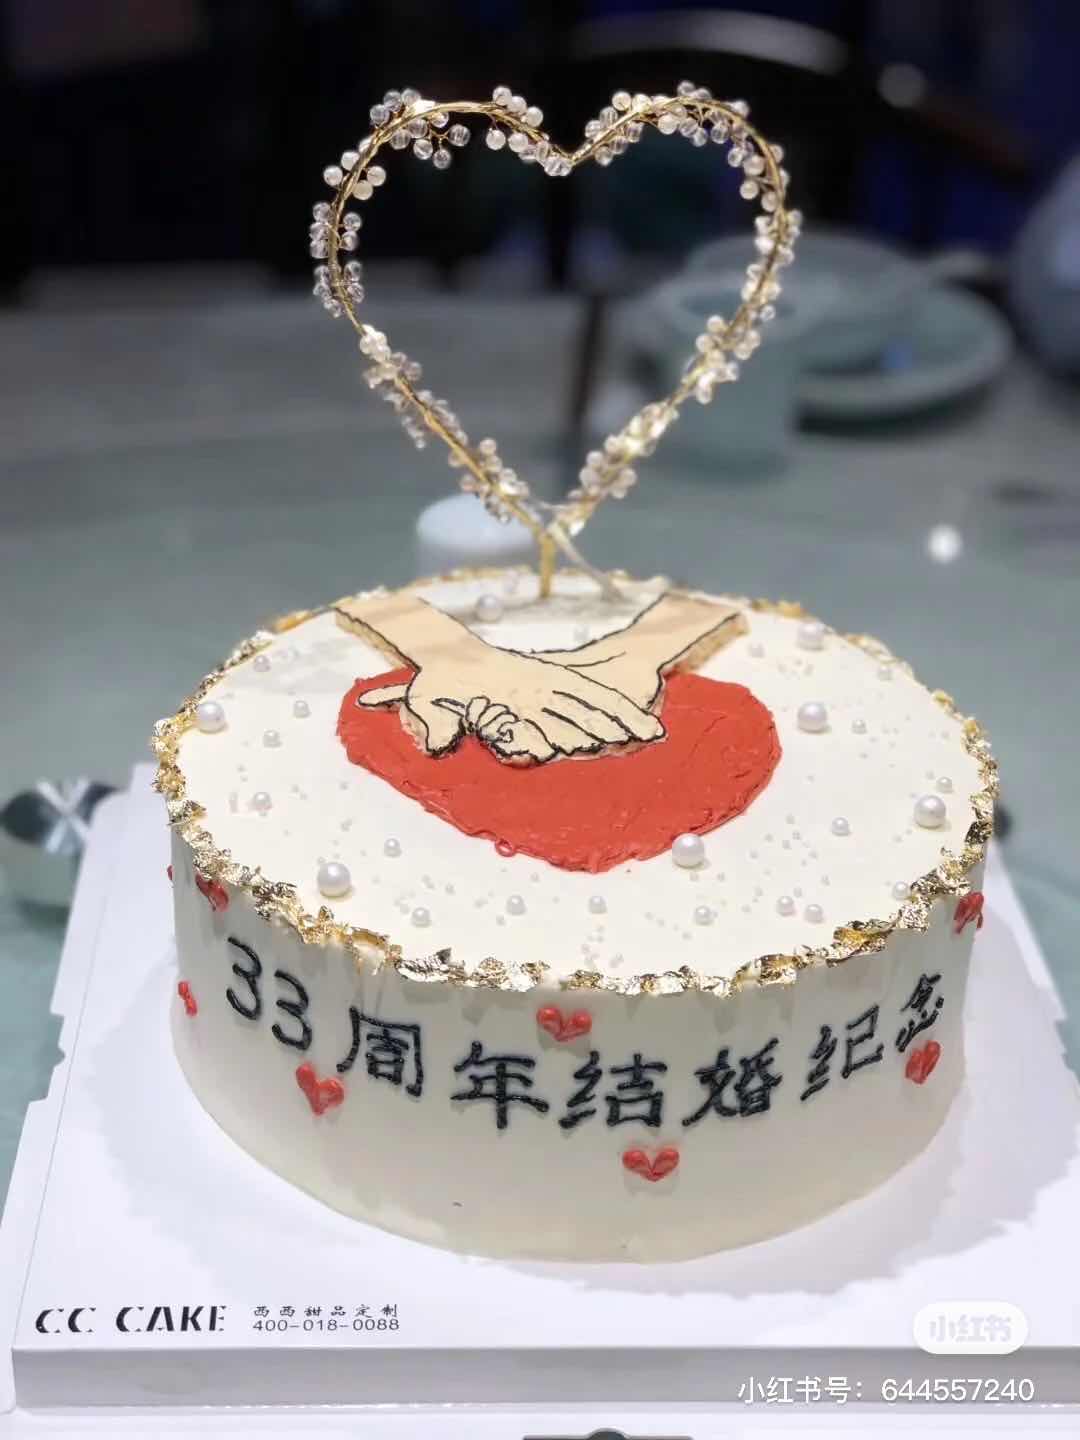 结婚纪念日生日蛋糕图片带文案【婚礼纪】